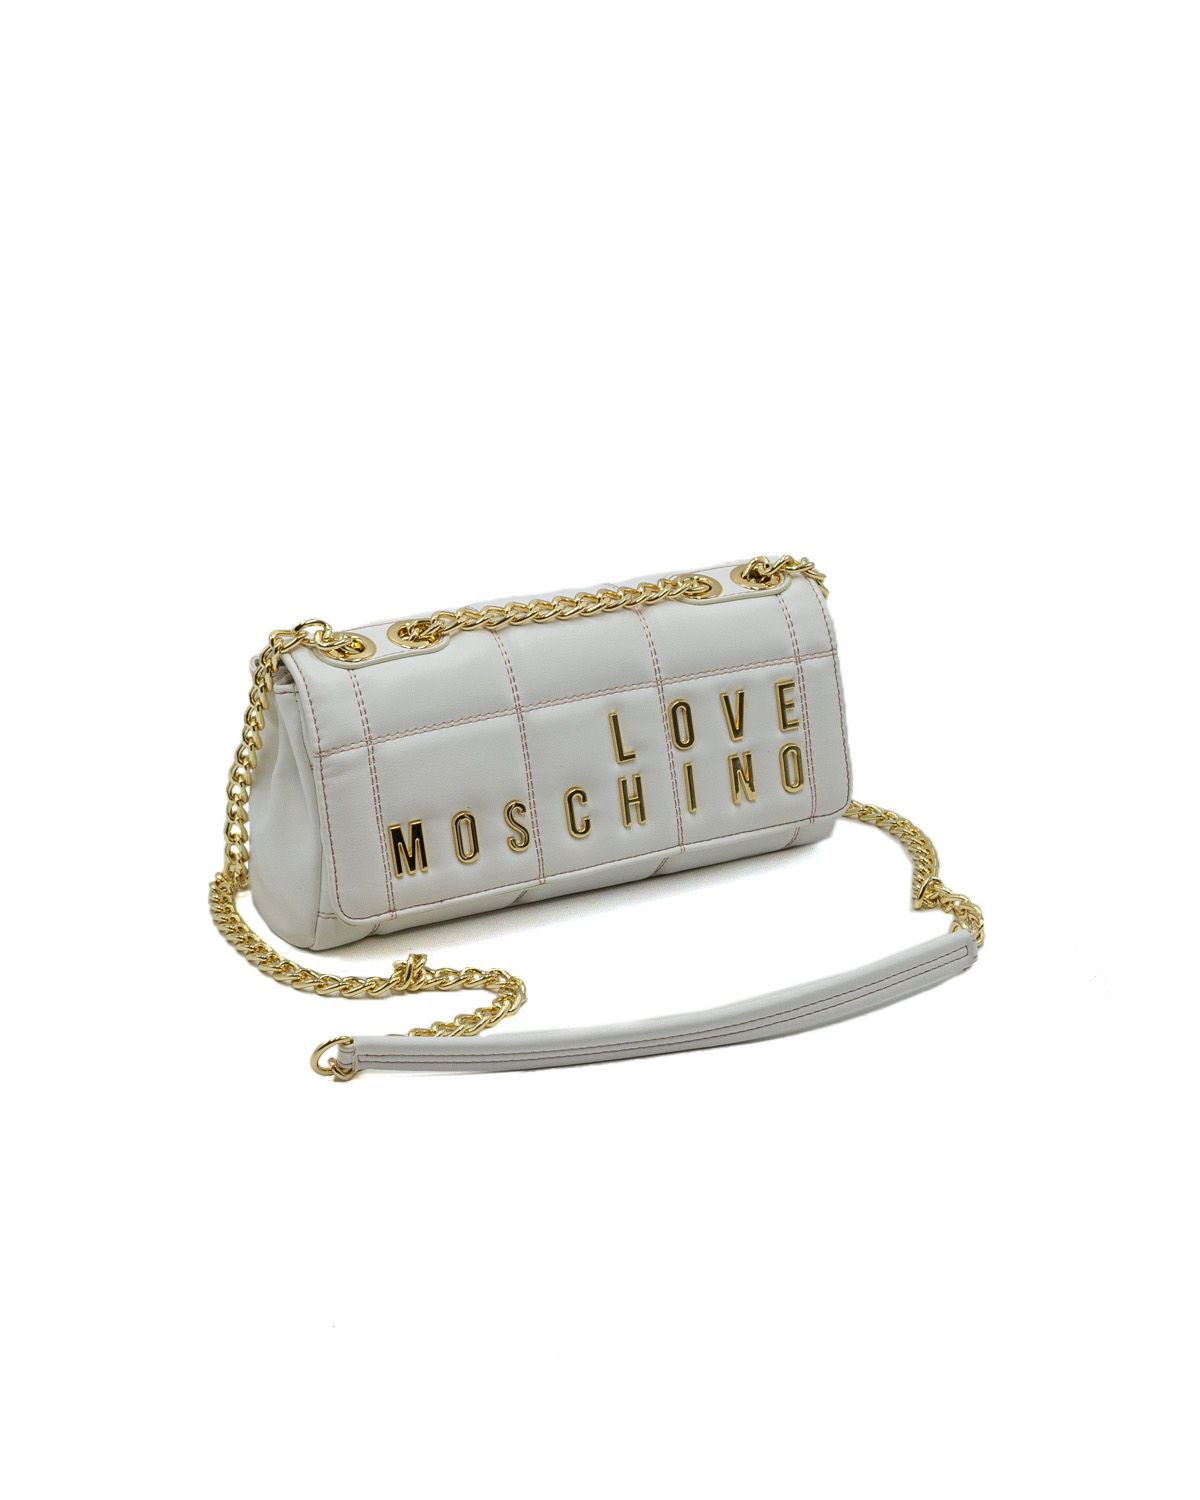 (image for) Borsa Love Moschino Embroidery Quilt tracolla con catena con logo lettering dorato